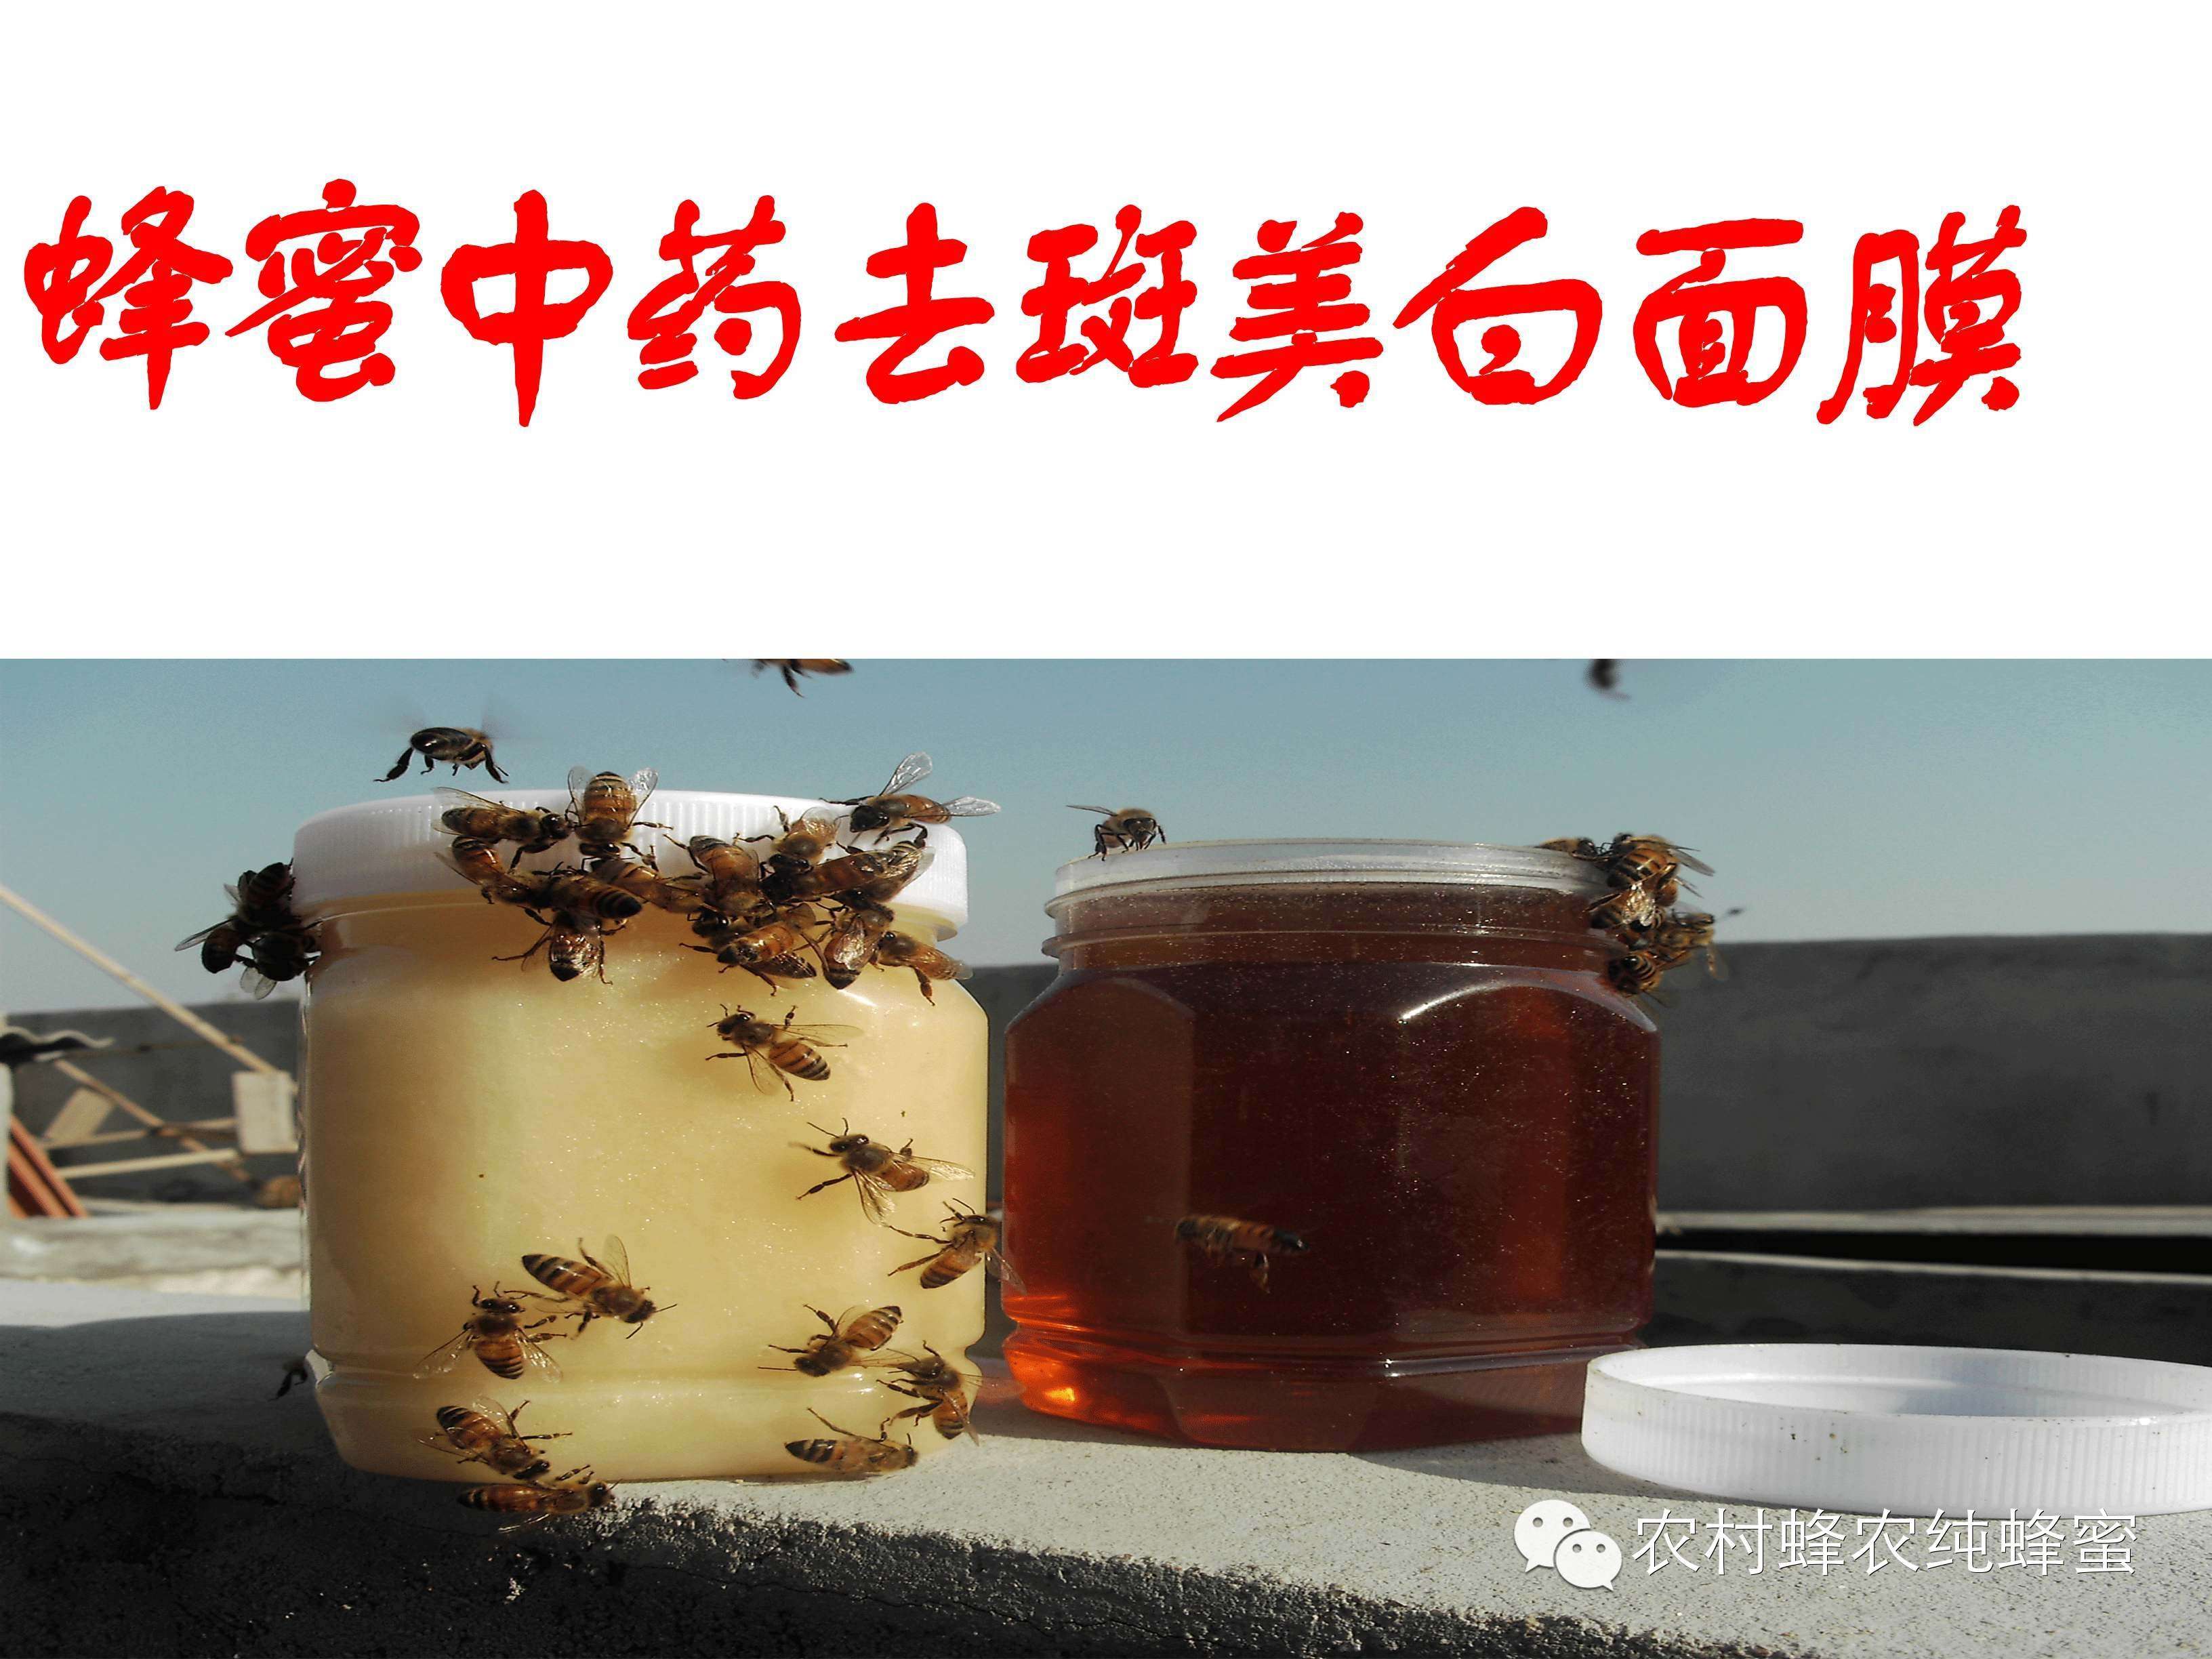 神农氏蜂蜜 蜂蜜 便秘 真蜂蜜价格 牛奶加蜂蜜 蜂蜜怎么吃